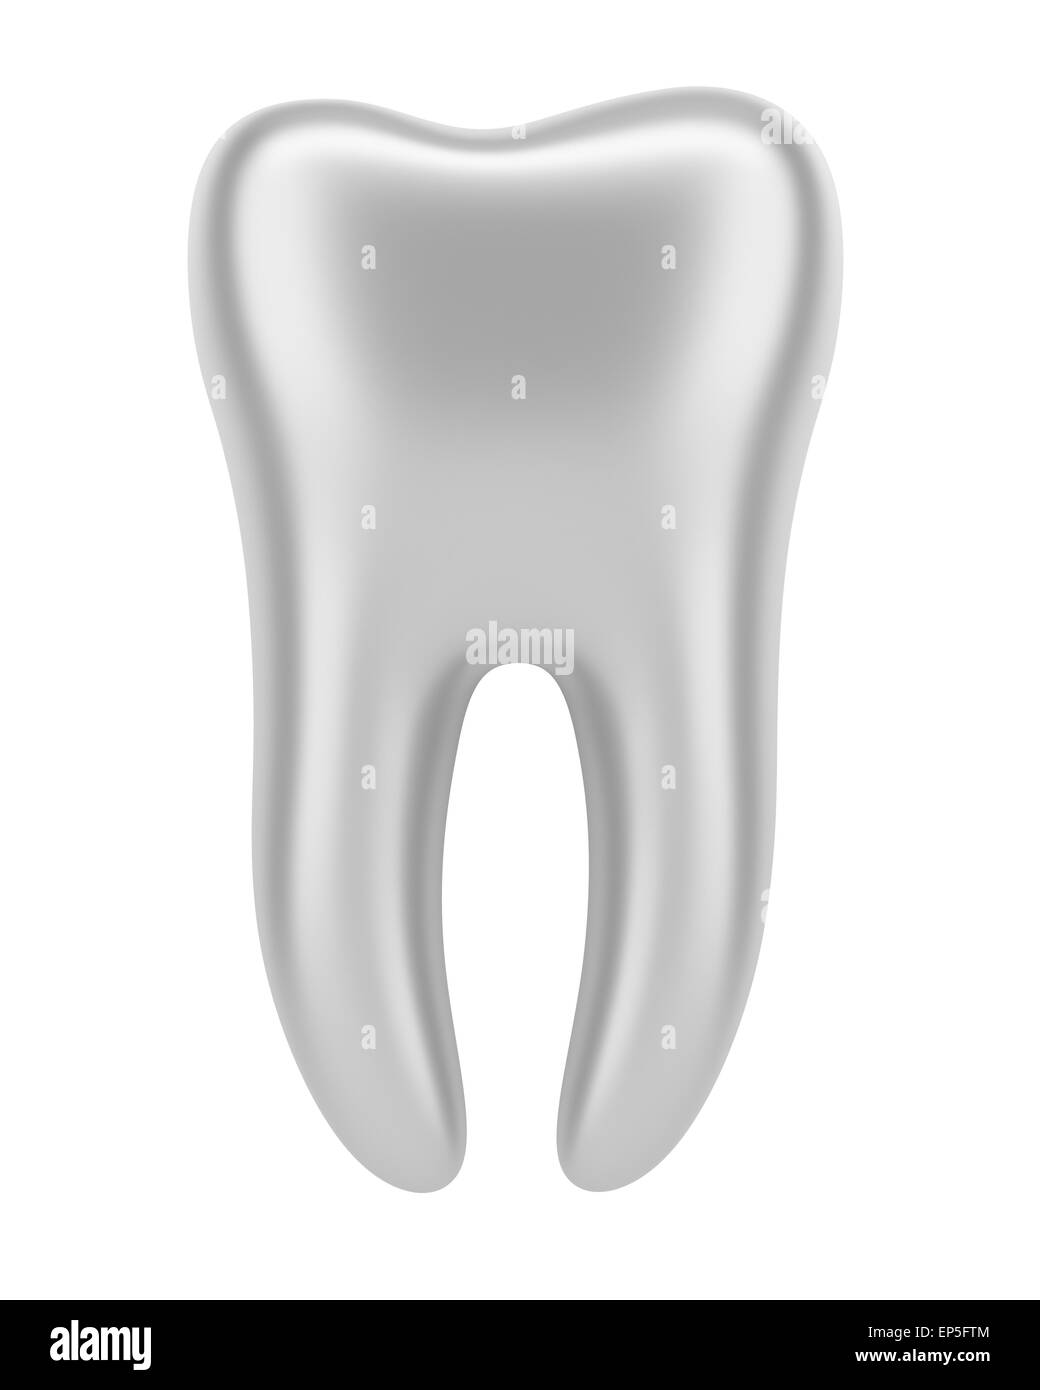 3d argento dente umano isolato su sfondo bianco Foto Stock